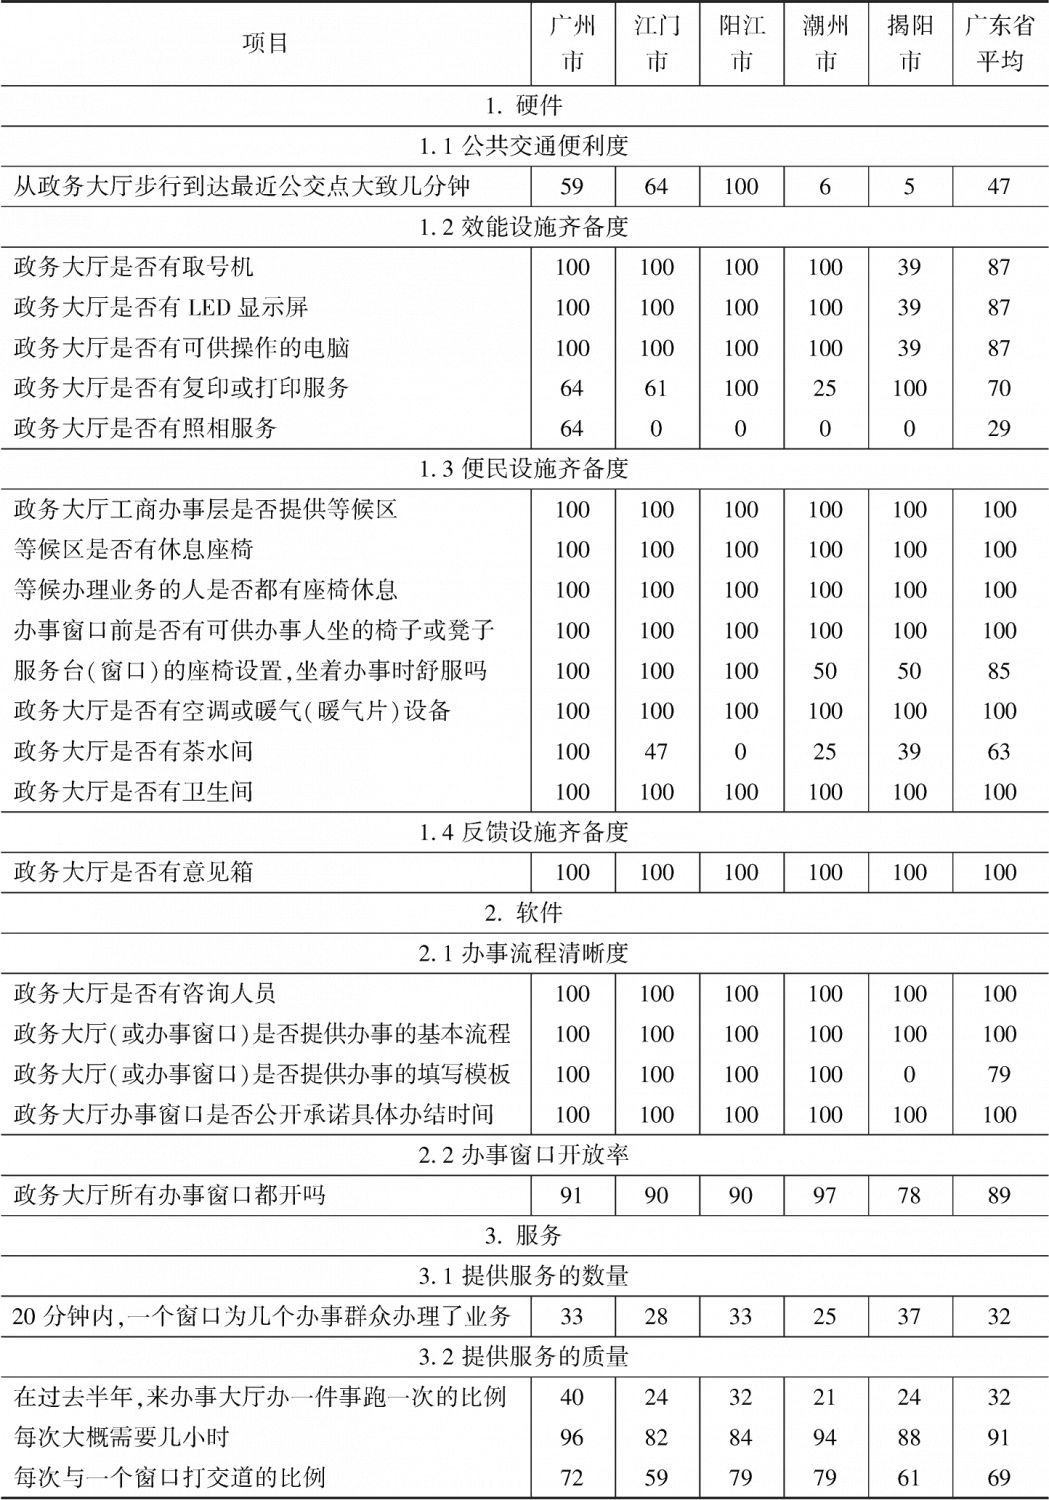 附表4-11 广东省政务环境得分